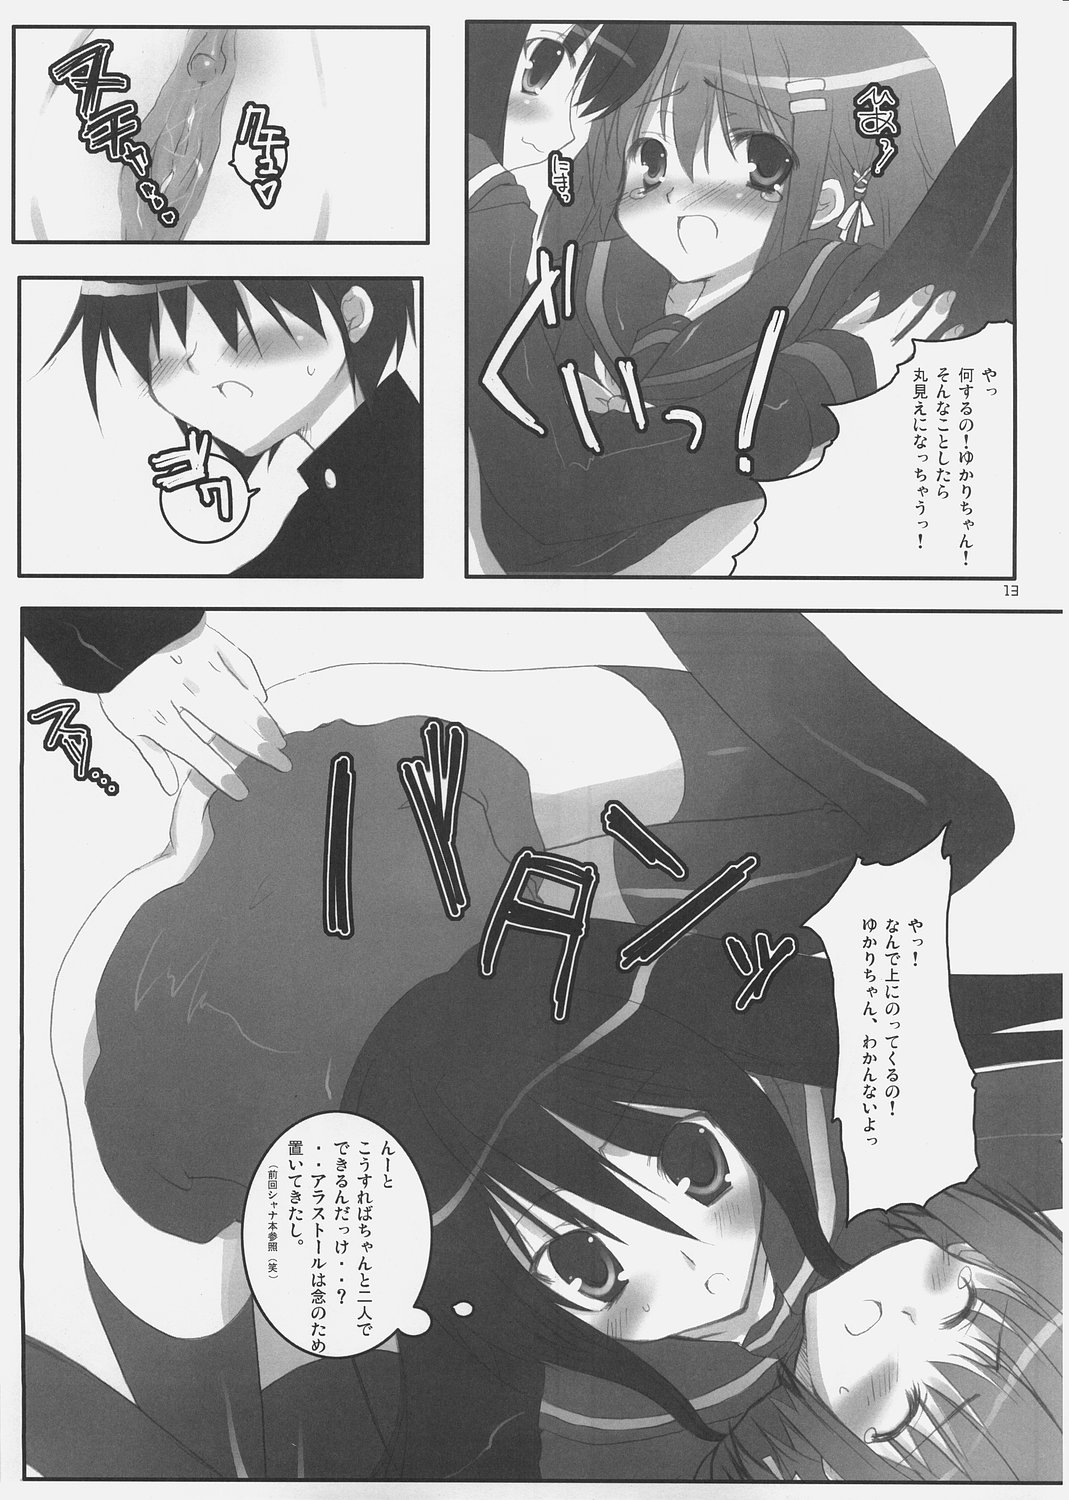 (SC31) [Petite*Cerisier (Sakura*Sakura)] Yoshida-san to Shana no Hon (Shakugan no Shana) page 12 full